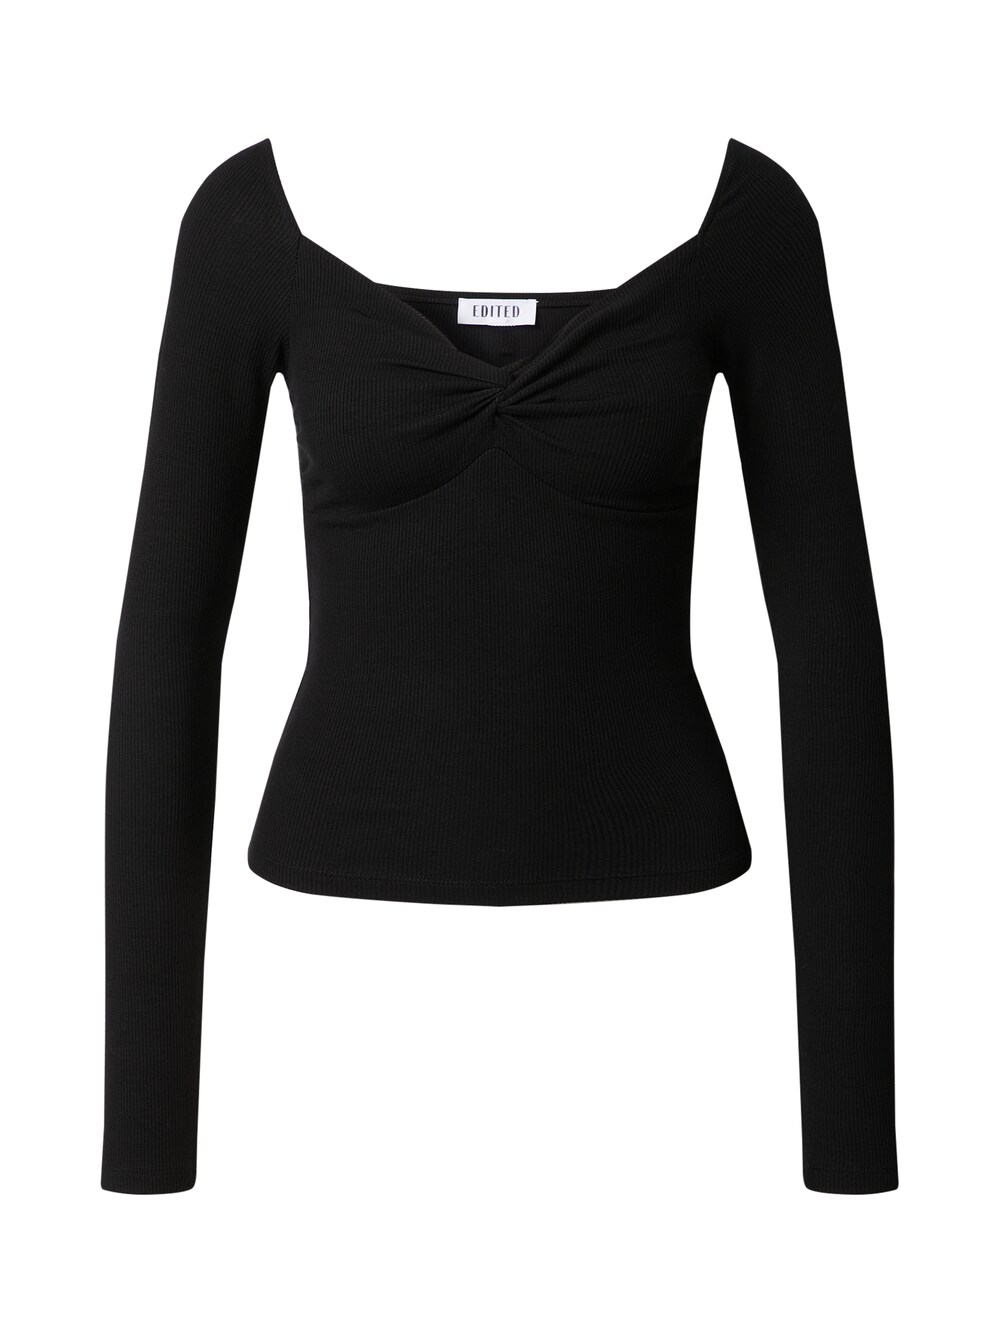 Рубашка EDITED Loana, черный боди loana цвет черный размер m